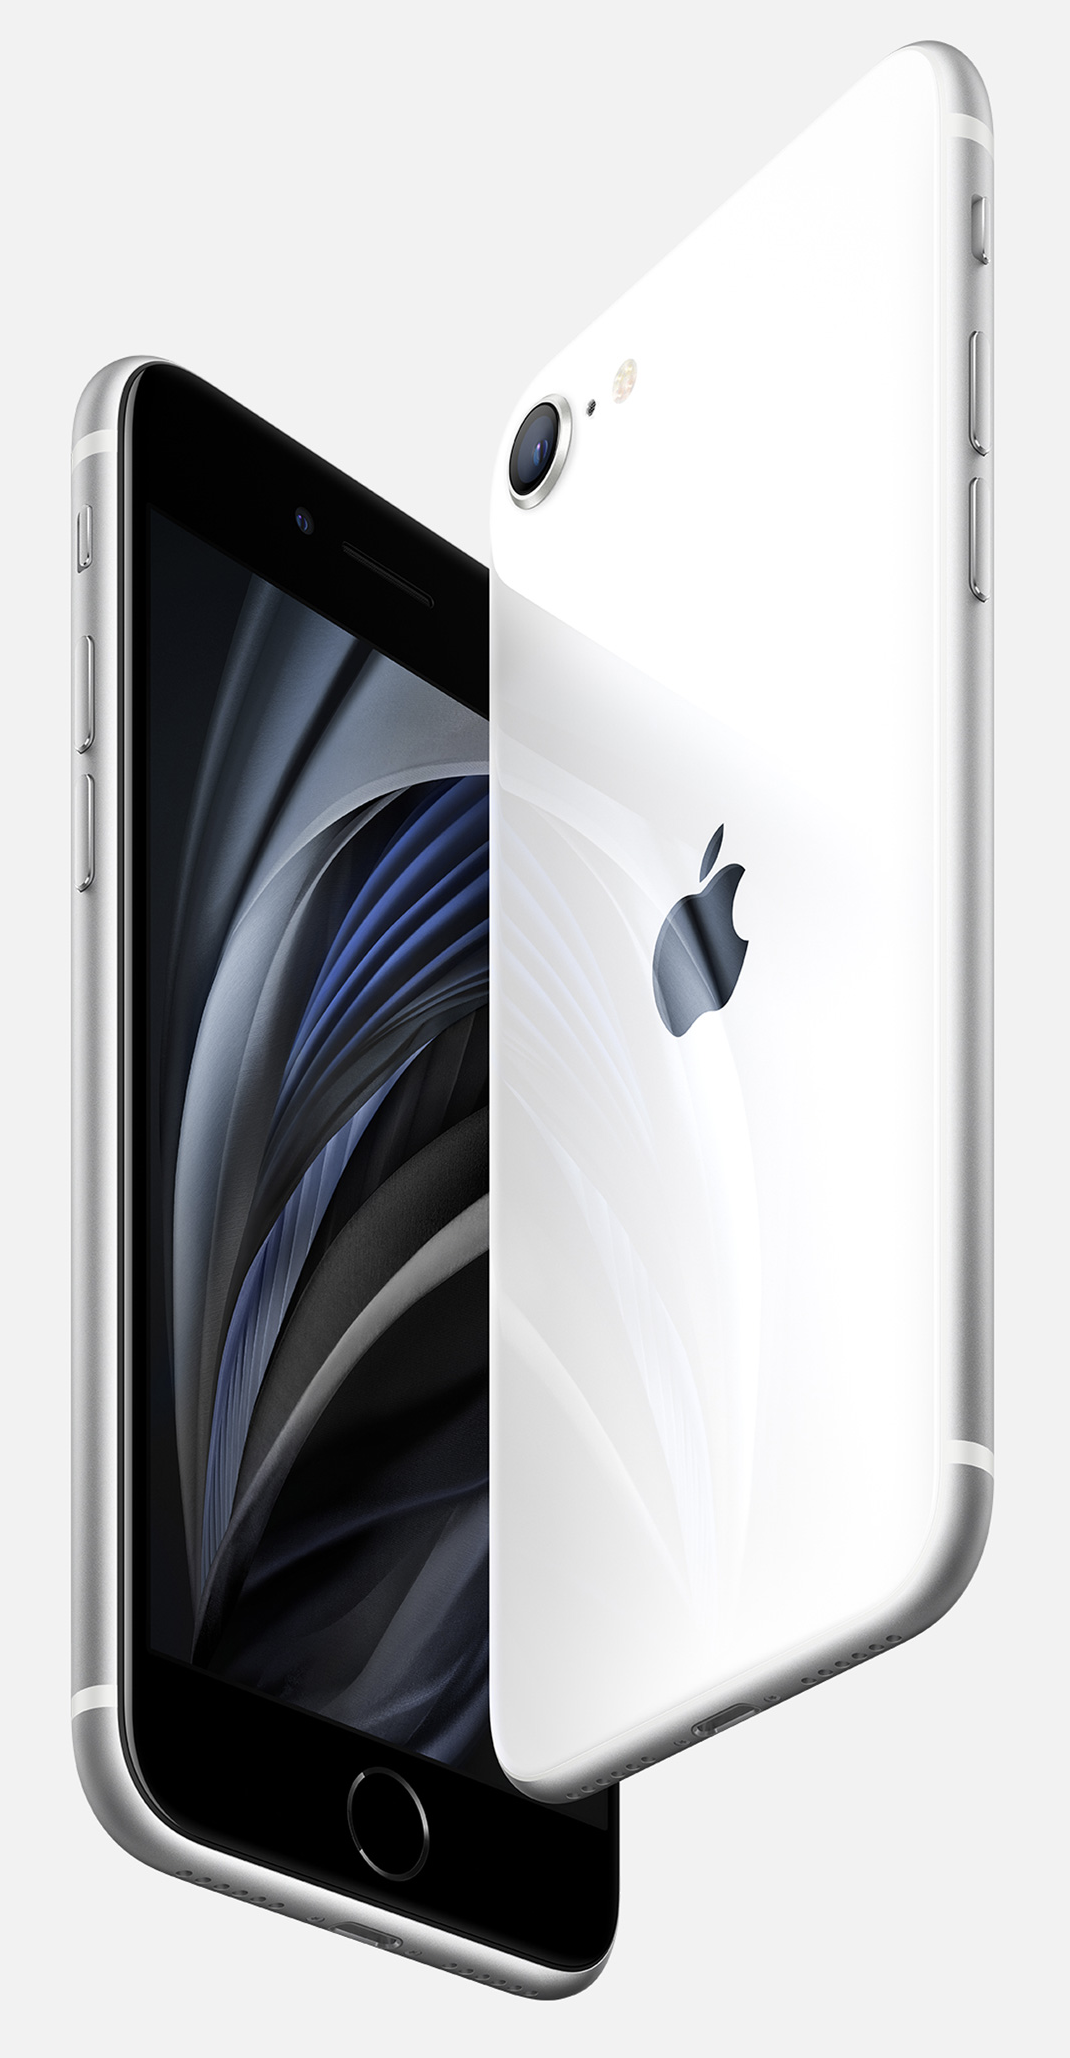 Apple announces second generation iPhone SE